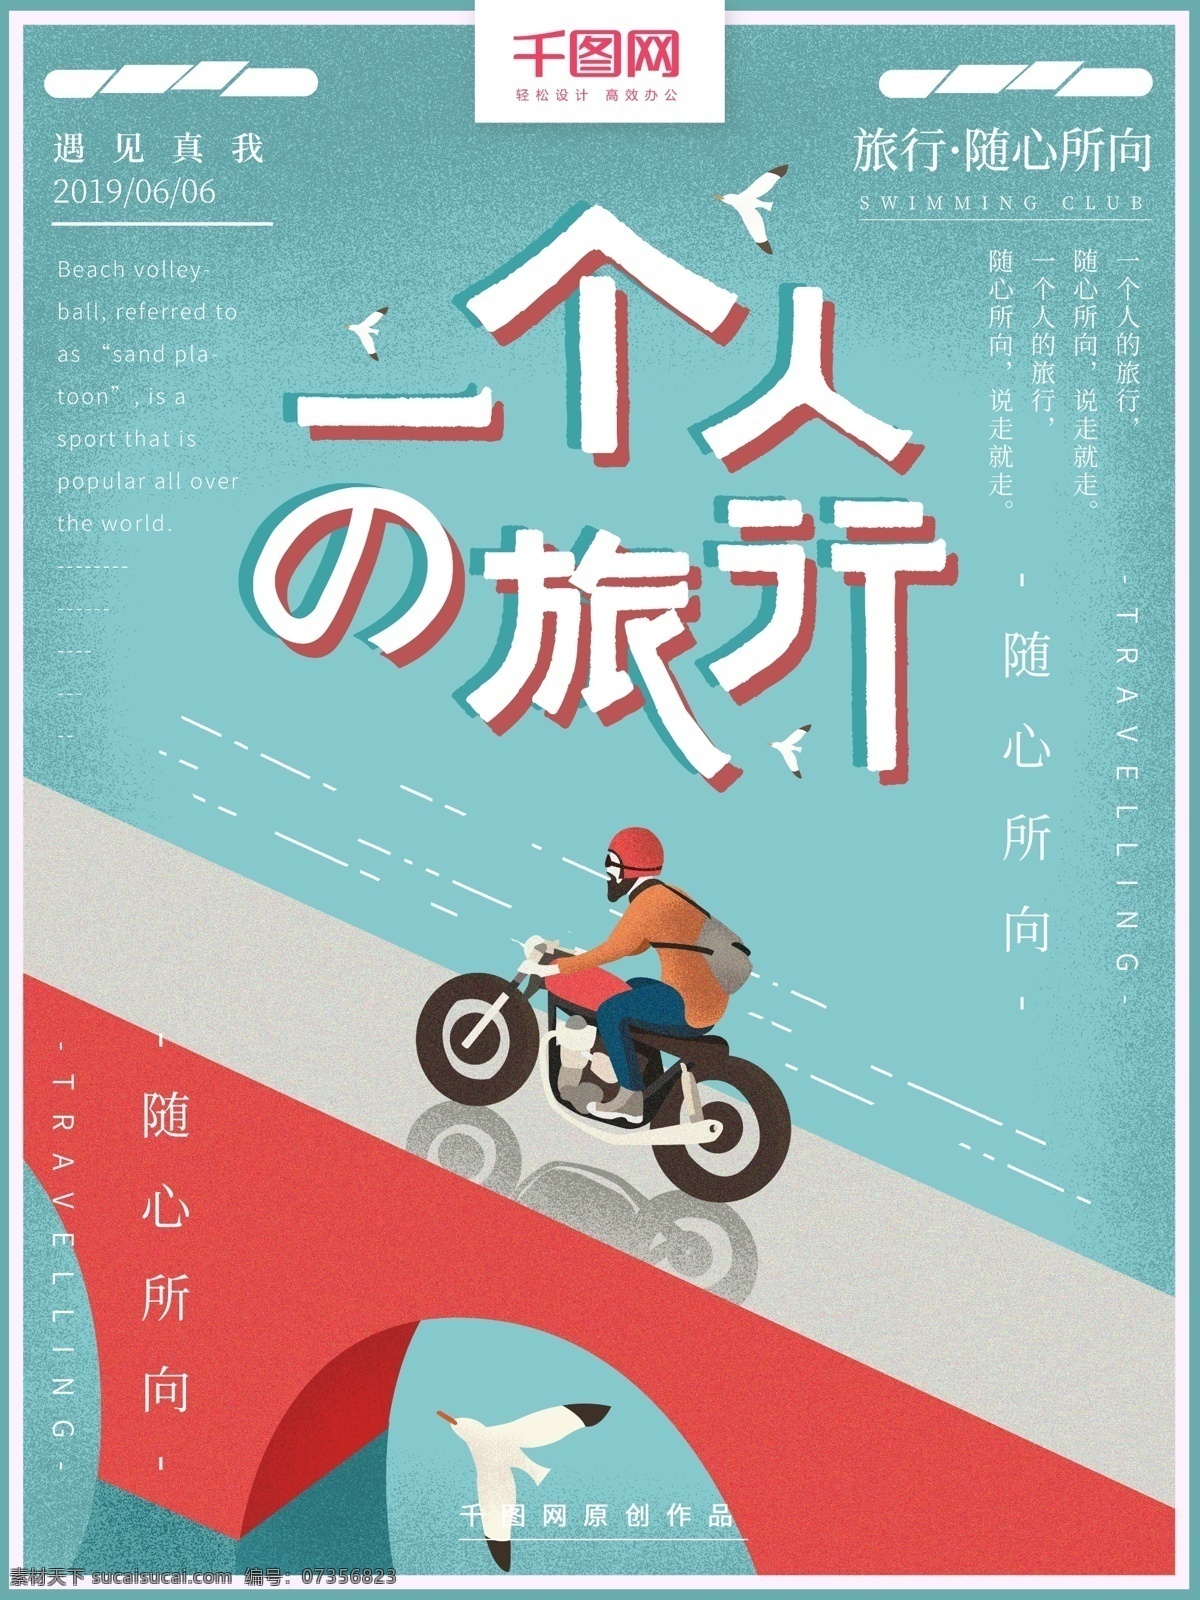 原创 手绘 个人 旅行 旅游 海报 一个人的旅行 骑行 自驾游 风景 摩托车 小清新 简约